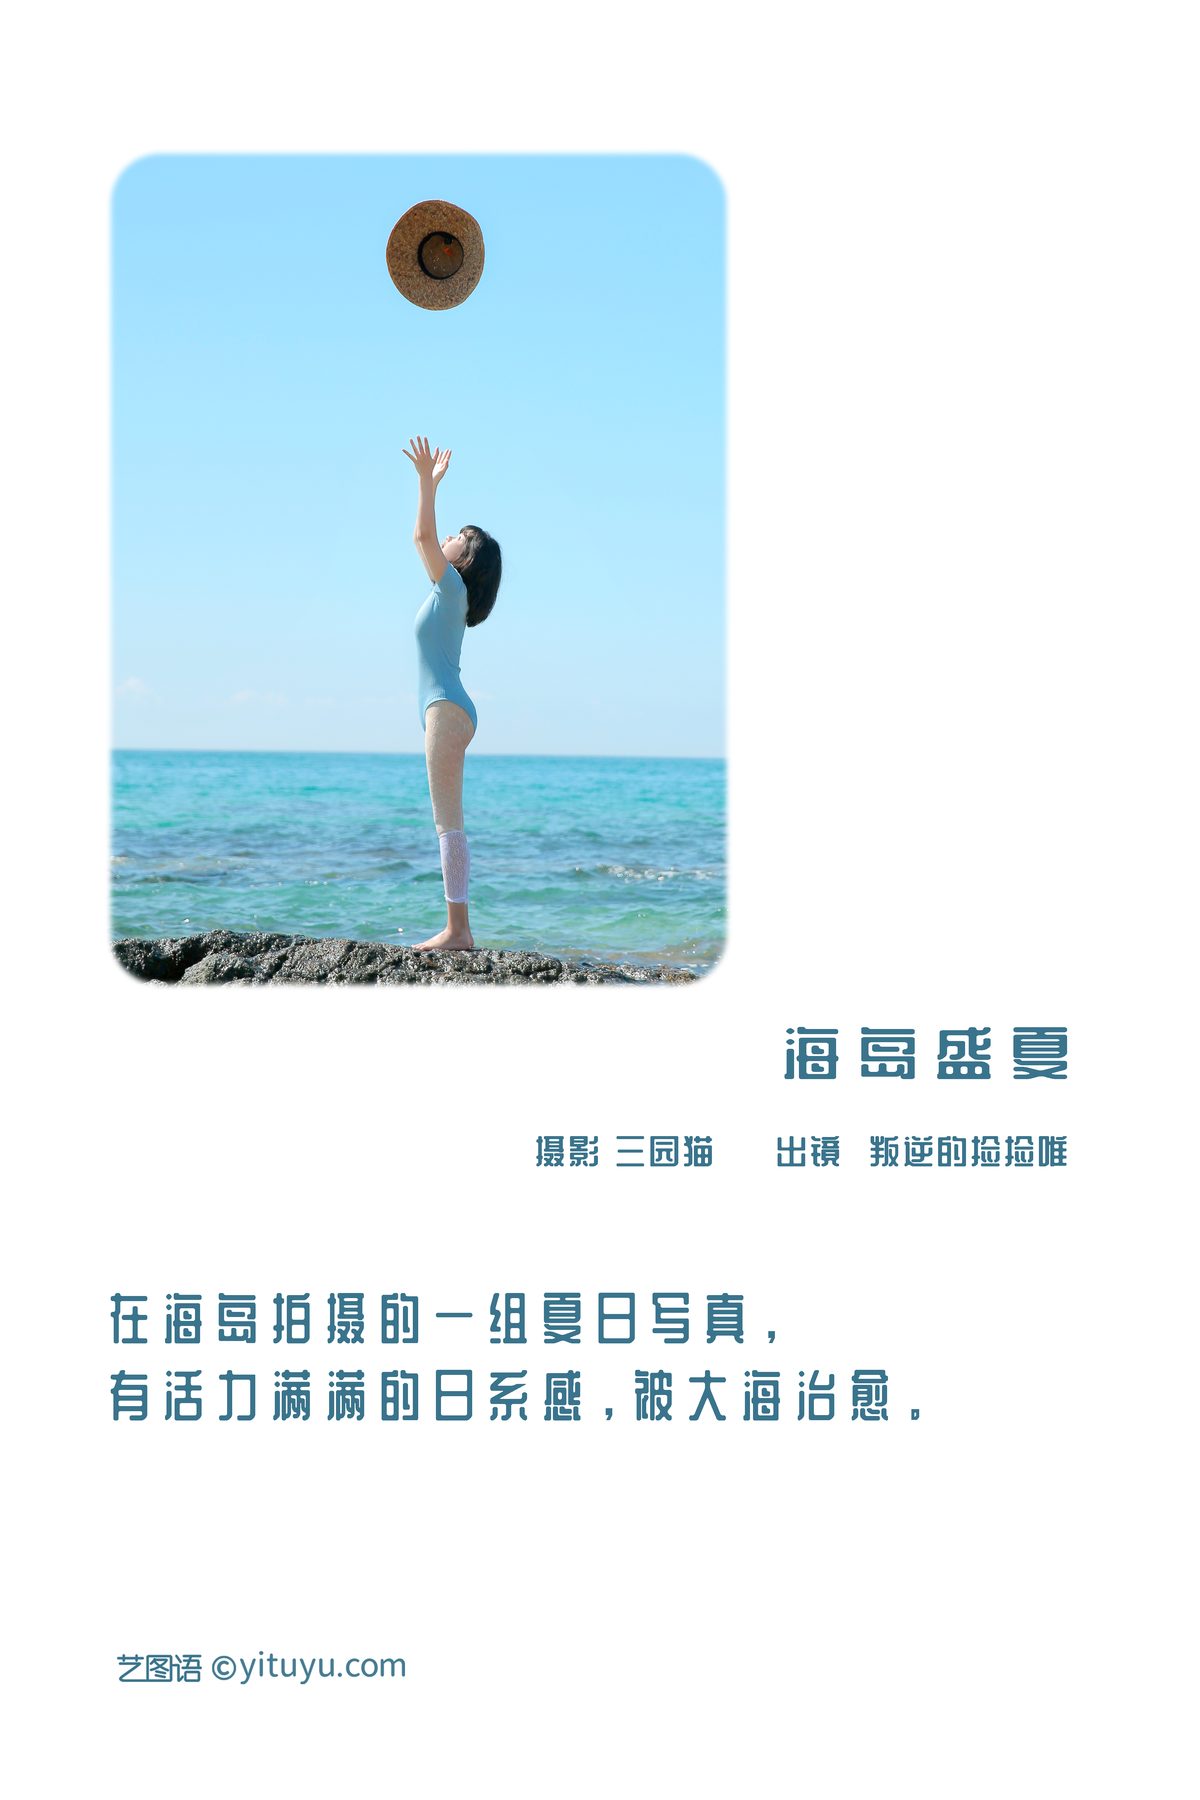 YiTuYu艺图语 Vol 3175 Pan Ni De Jian Jian Wei 0002 3821772953.jpg